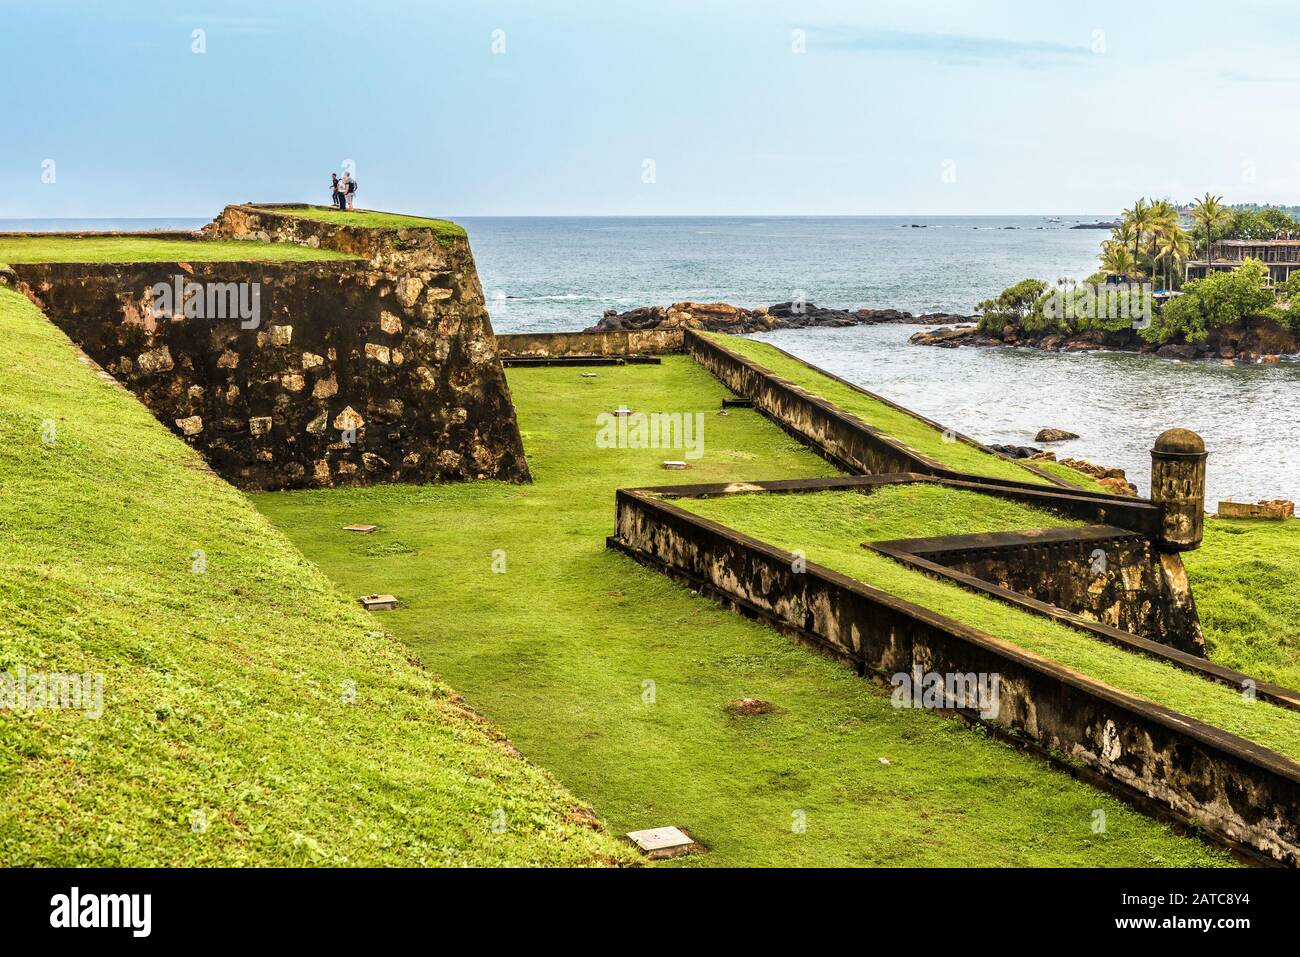 Galle Fort sulla costa sud-occidentale dello Sri Lanka. Questa fortezza fu costruita nel 1588, poi fortificata dagli olandesi durante il 17th sec. E' un mondo dell'UNESCO Foto Stock